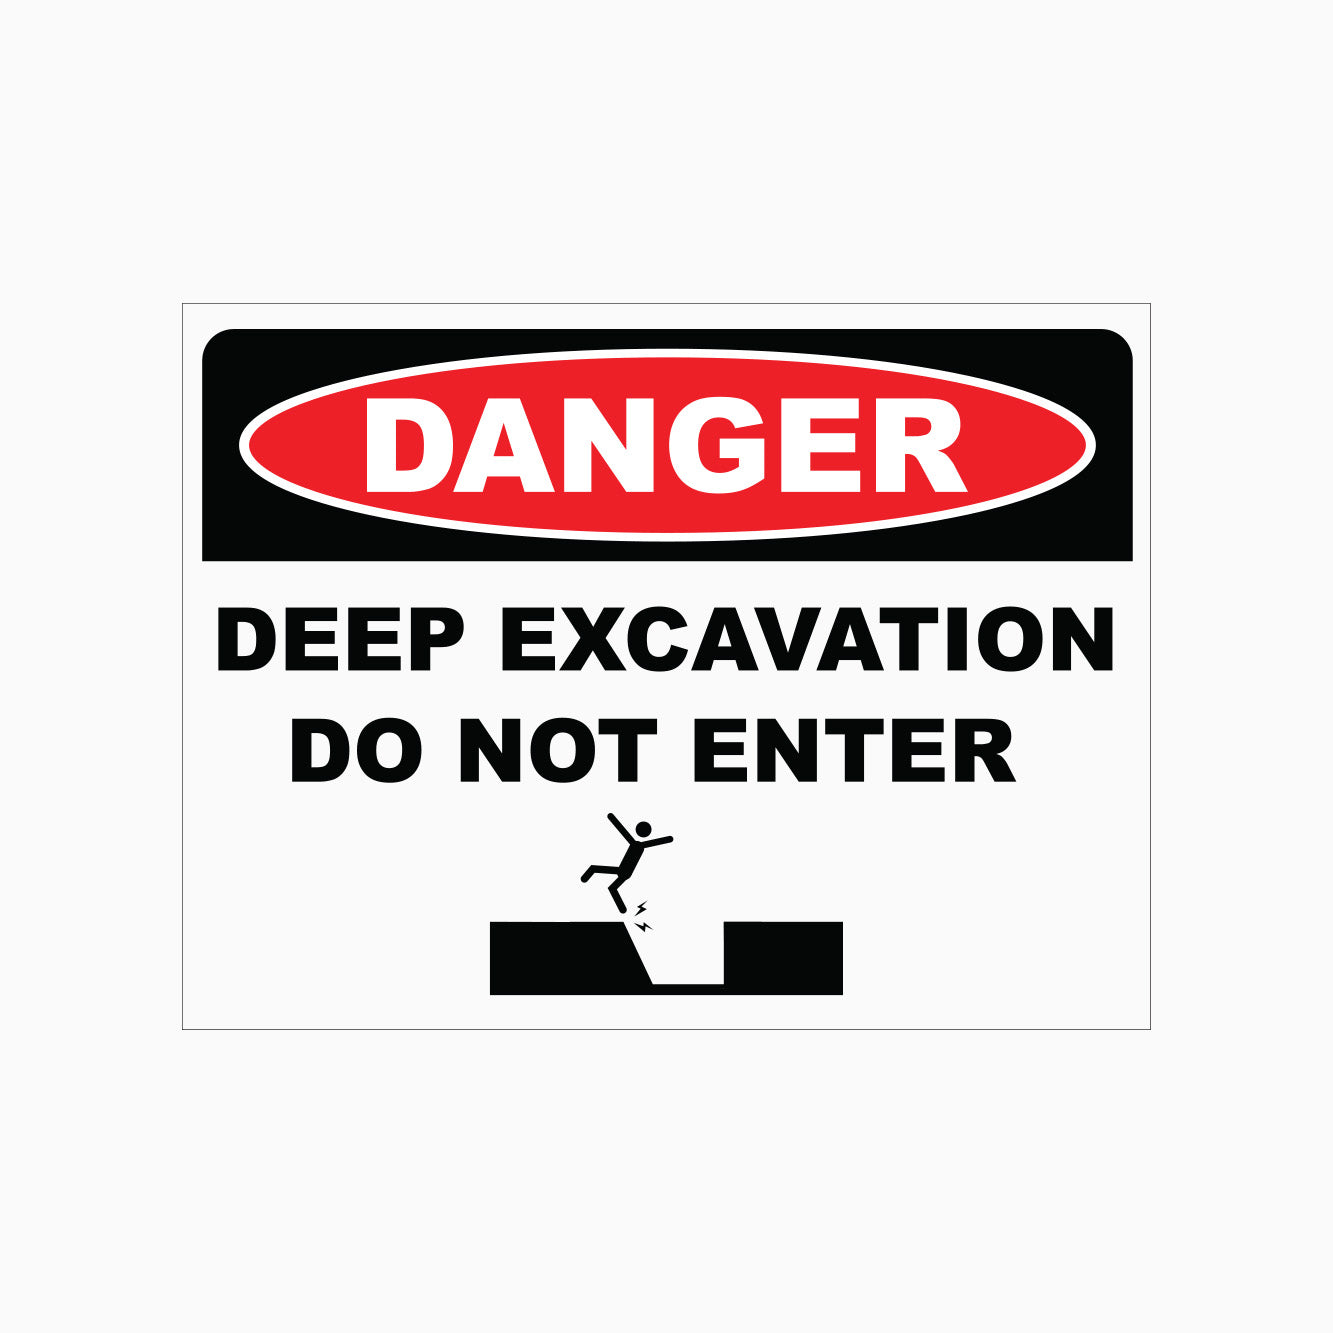 DEEP EXCAVATION DO NOT ENTER SIGN - DANGER SIGN